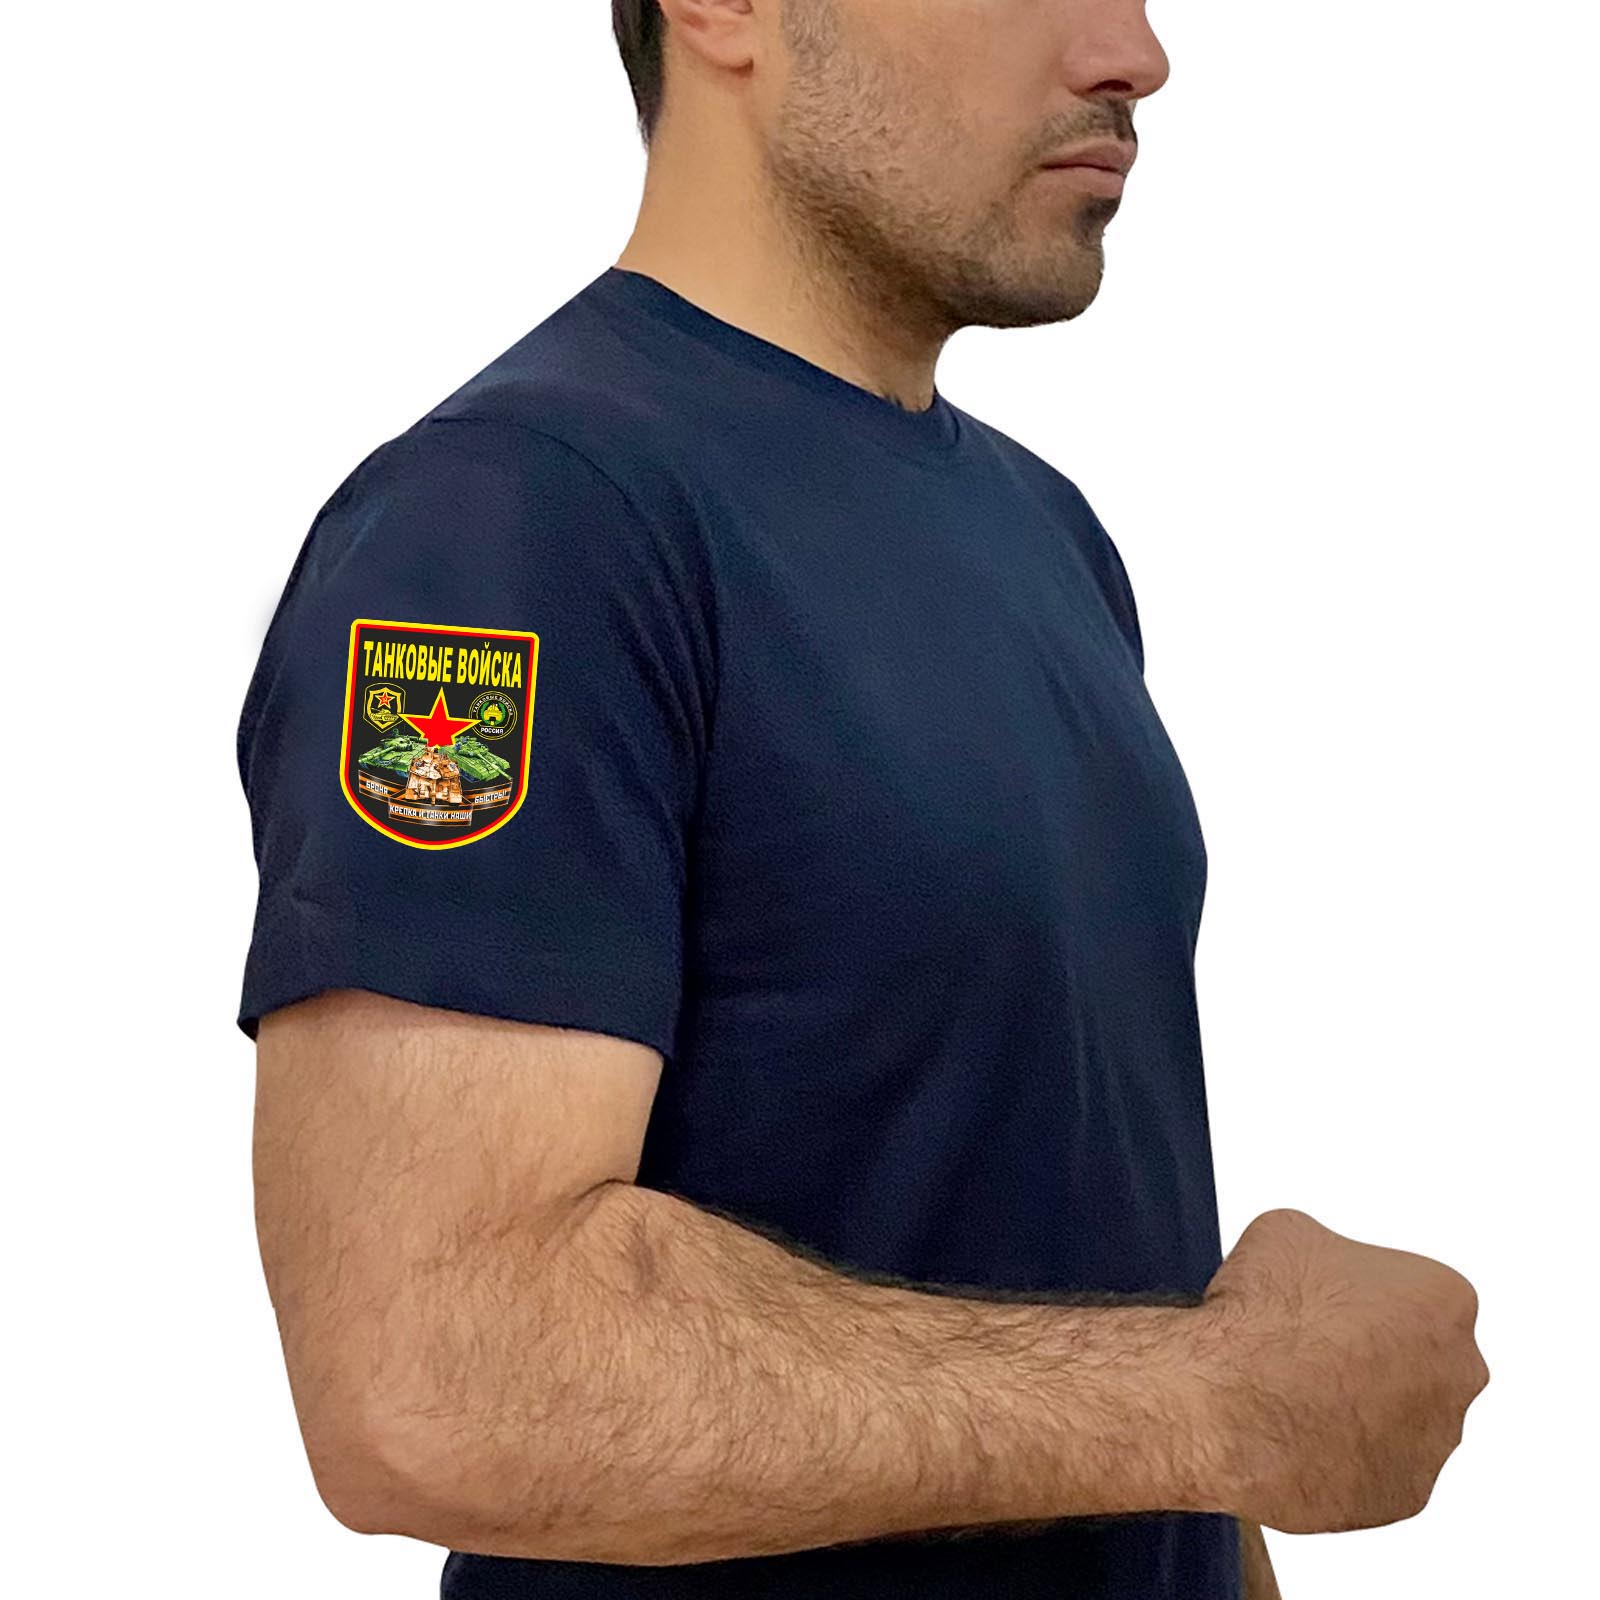 Купить темно-синюю удобную футболку с термотрансфером Танковые Войска с доставкой